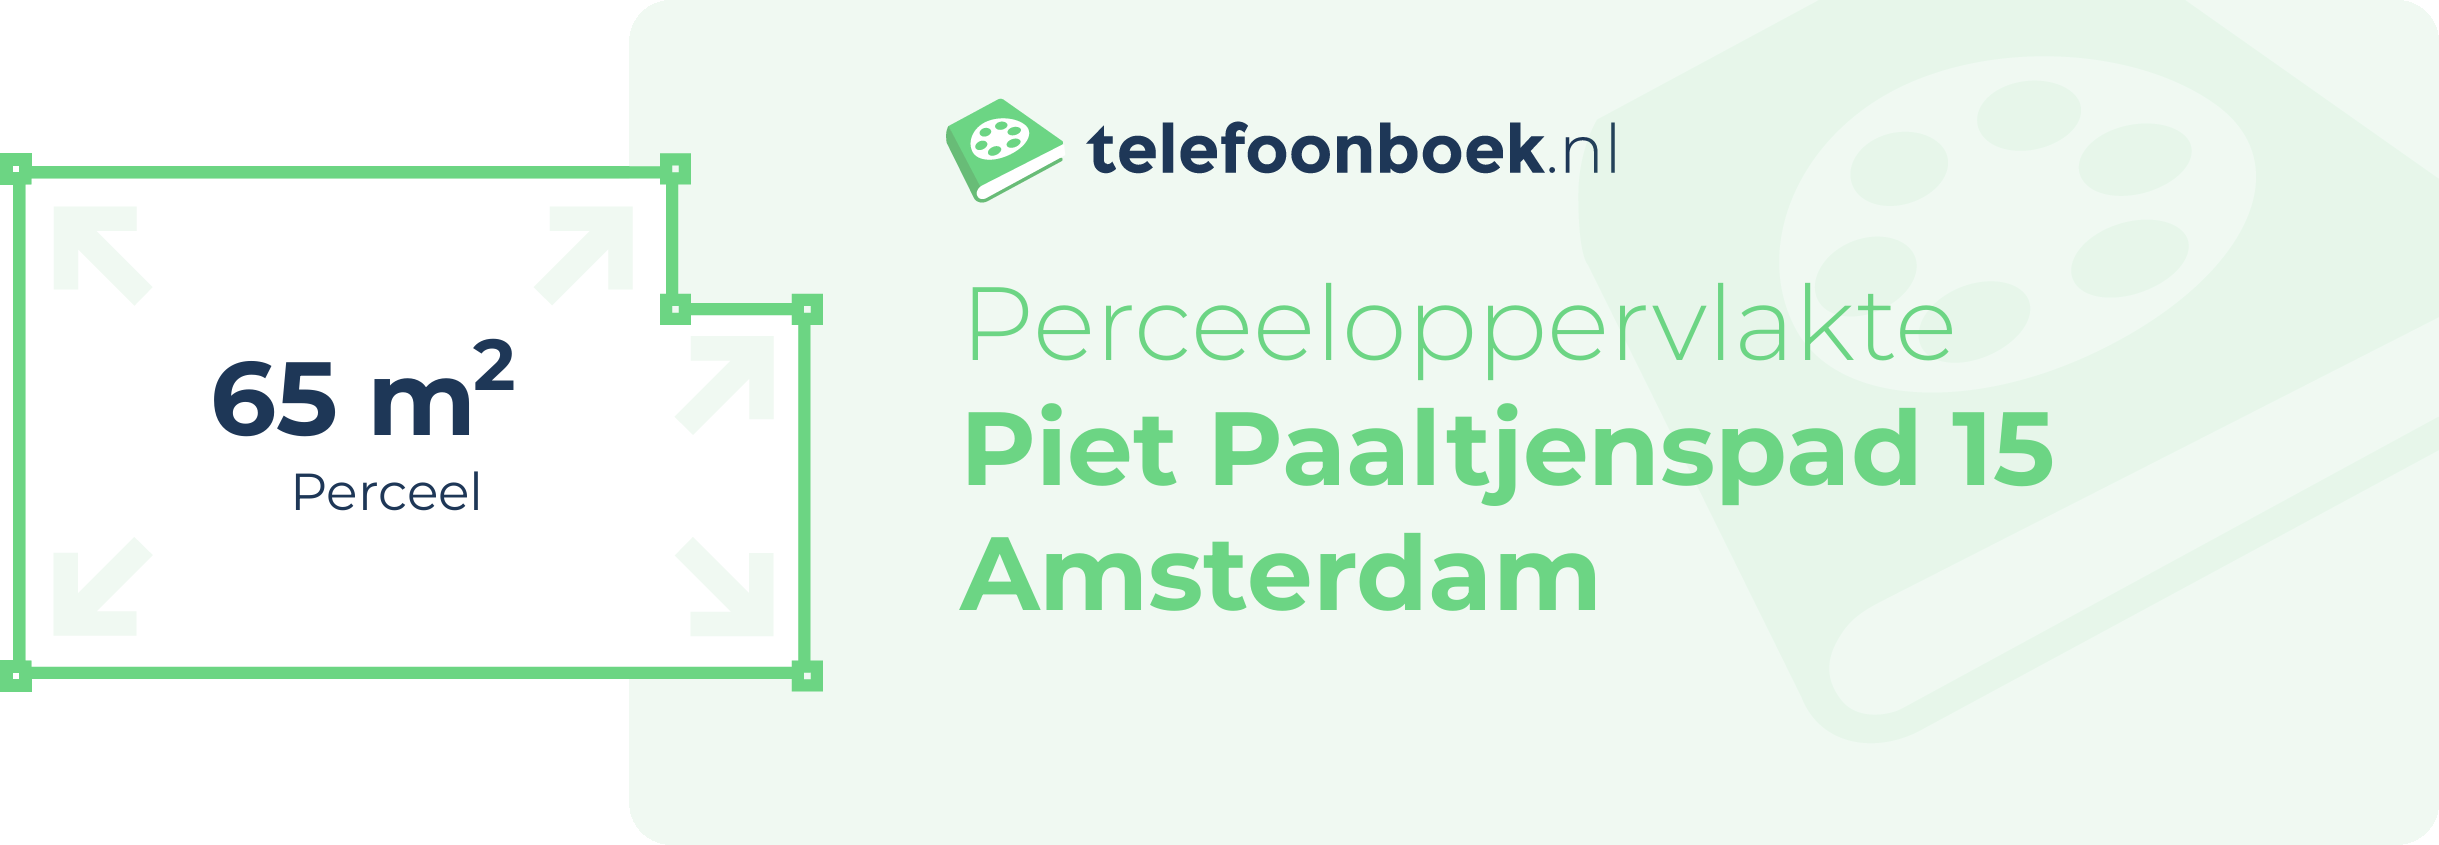 Perceeloppervlakte Piet Paaltjenspad 15 Amsterdam